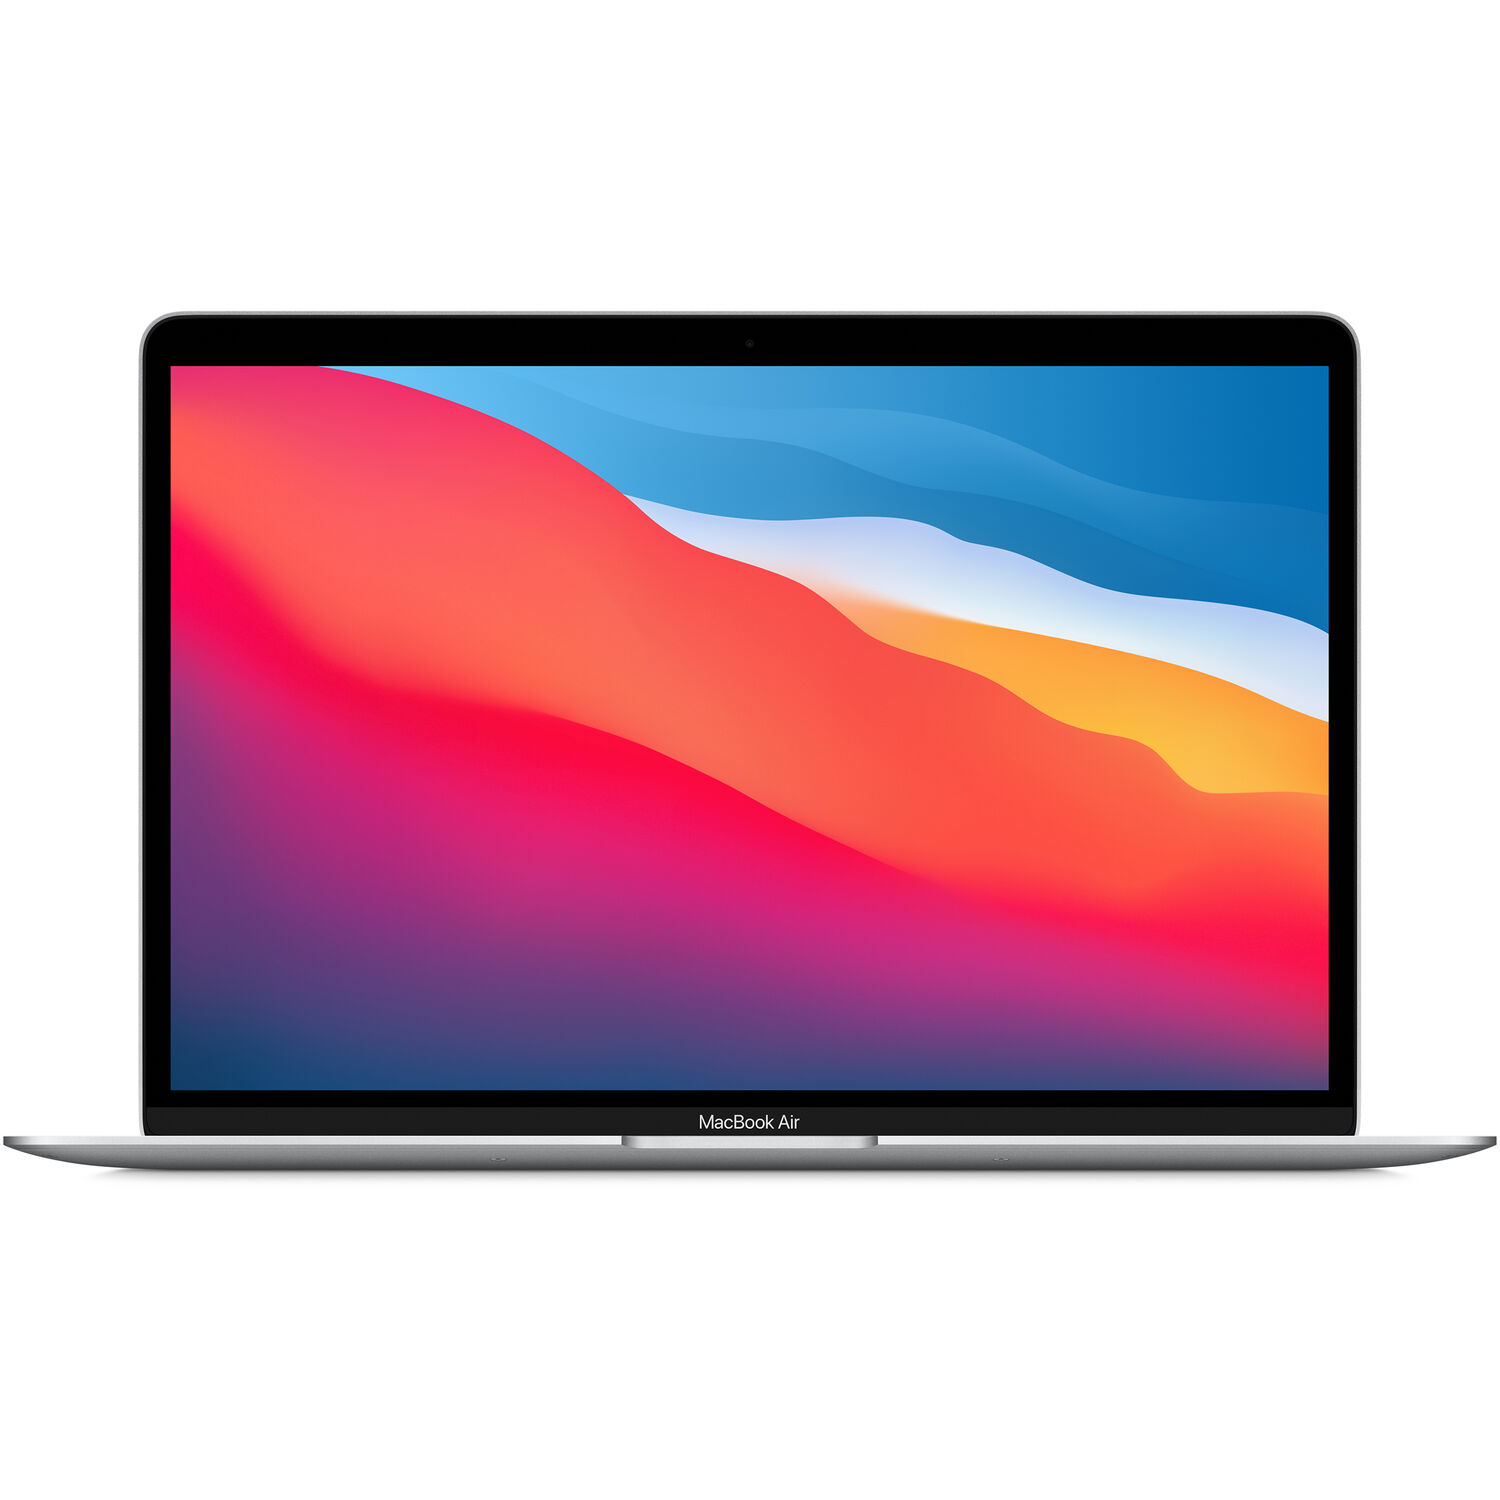 Portátil Apple Macbook Air M1 Chip de 13.3 con Pantalla Retina Finales de 2020 Plateado